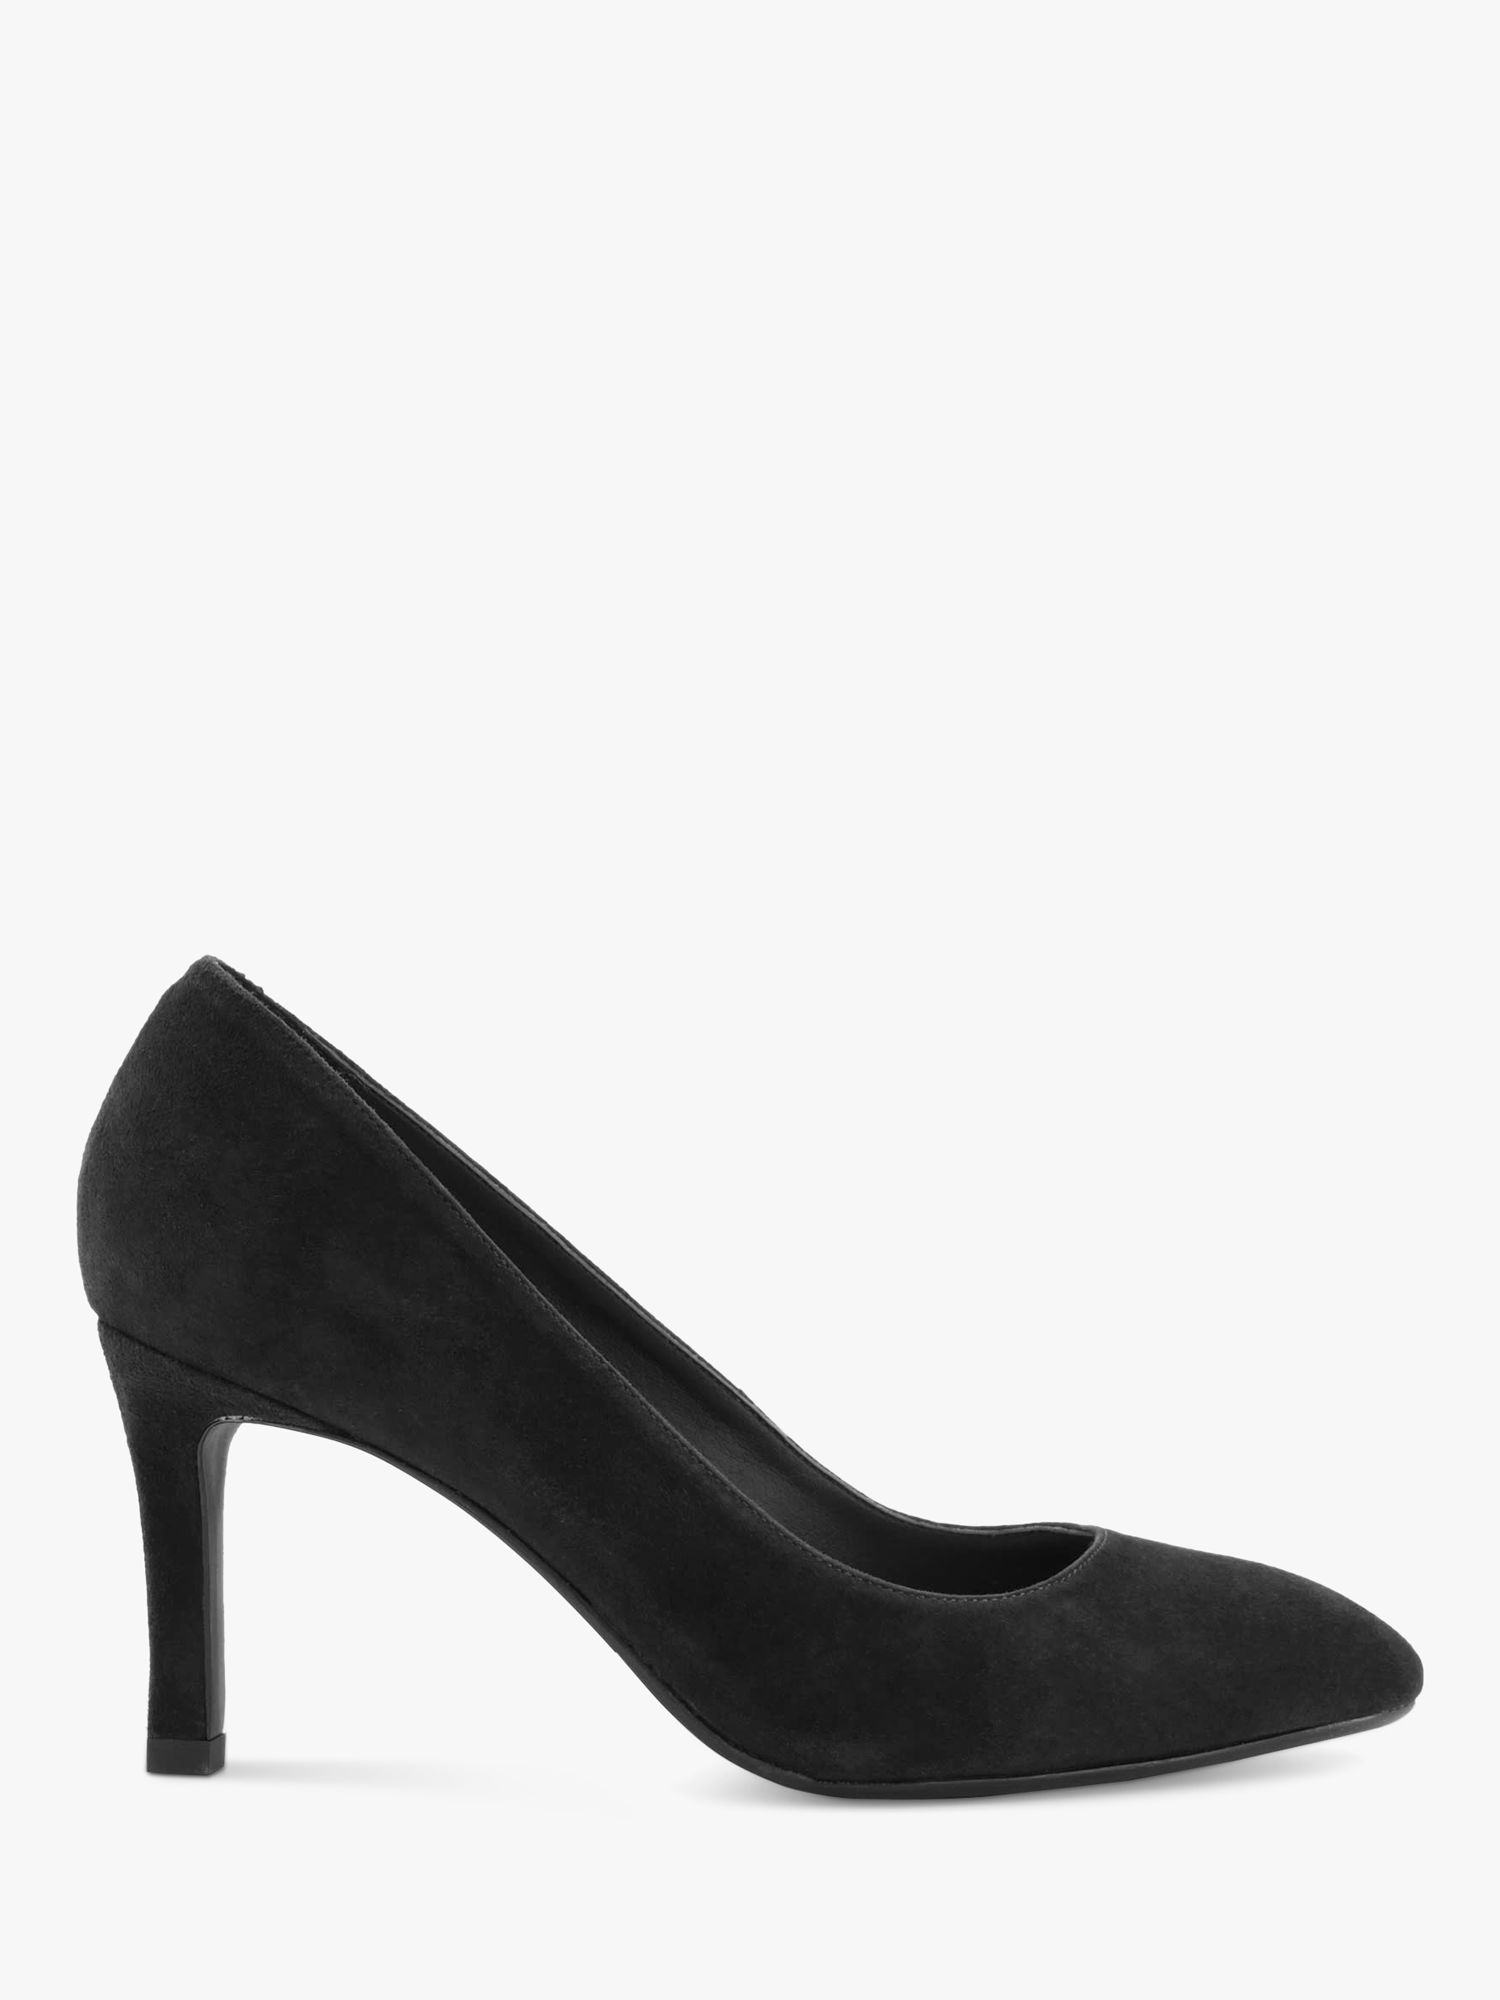 Dune Adele Nubuck Court Shoes, Black, 3